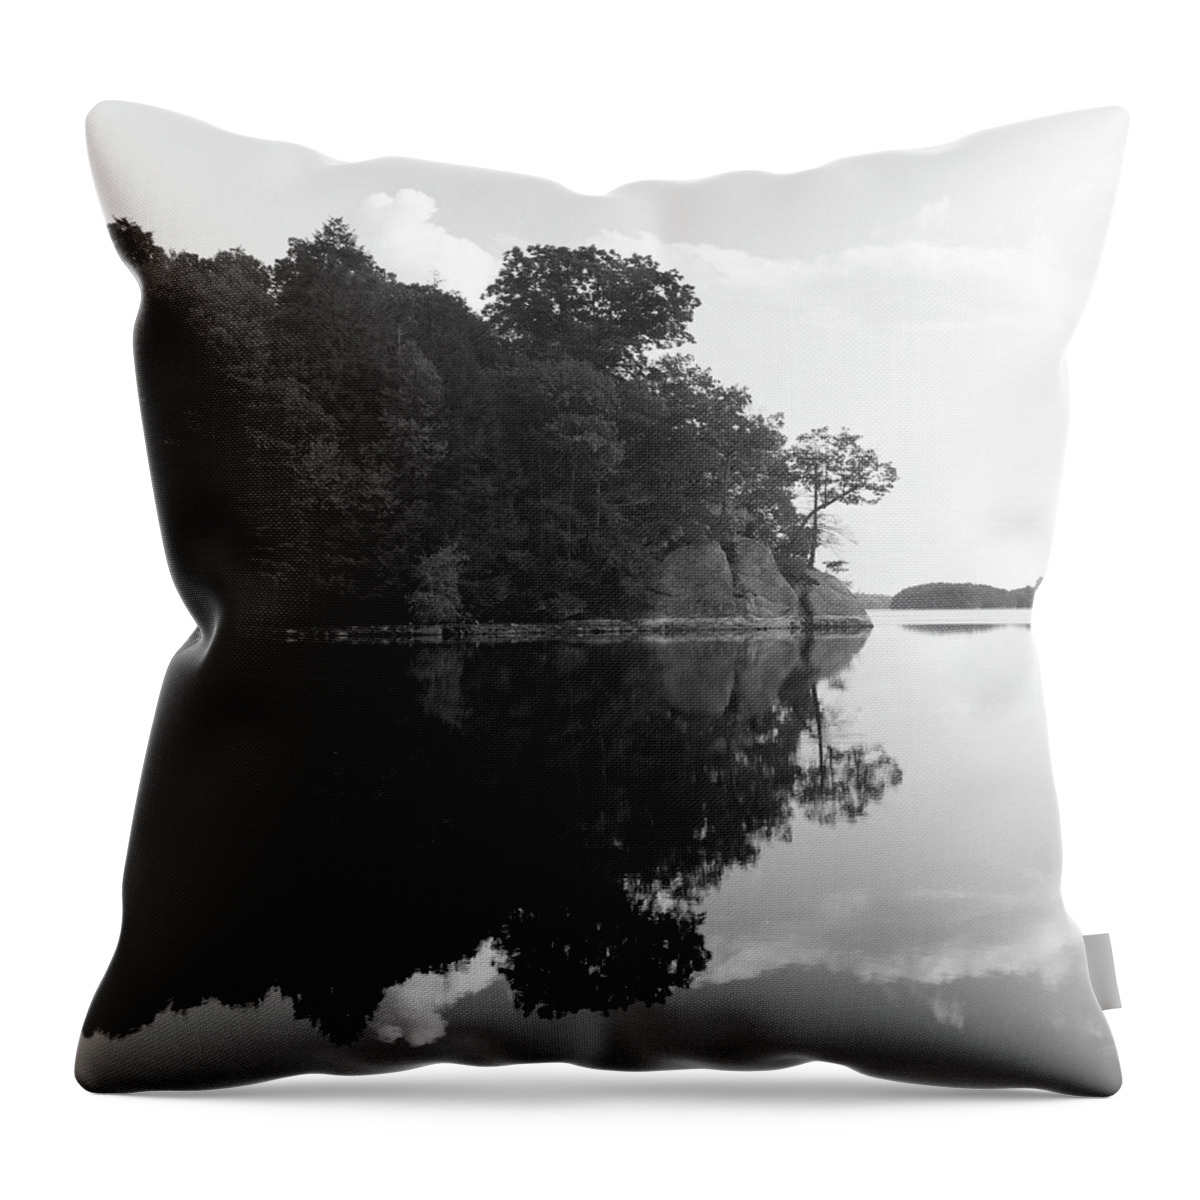 Reservoir Throw Pillow featuring the photograph Reservoir Reflection by Adam Garelick